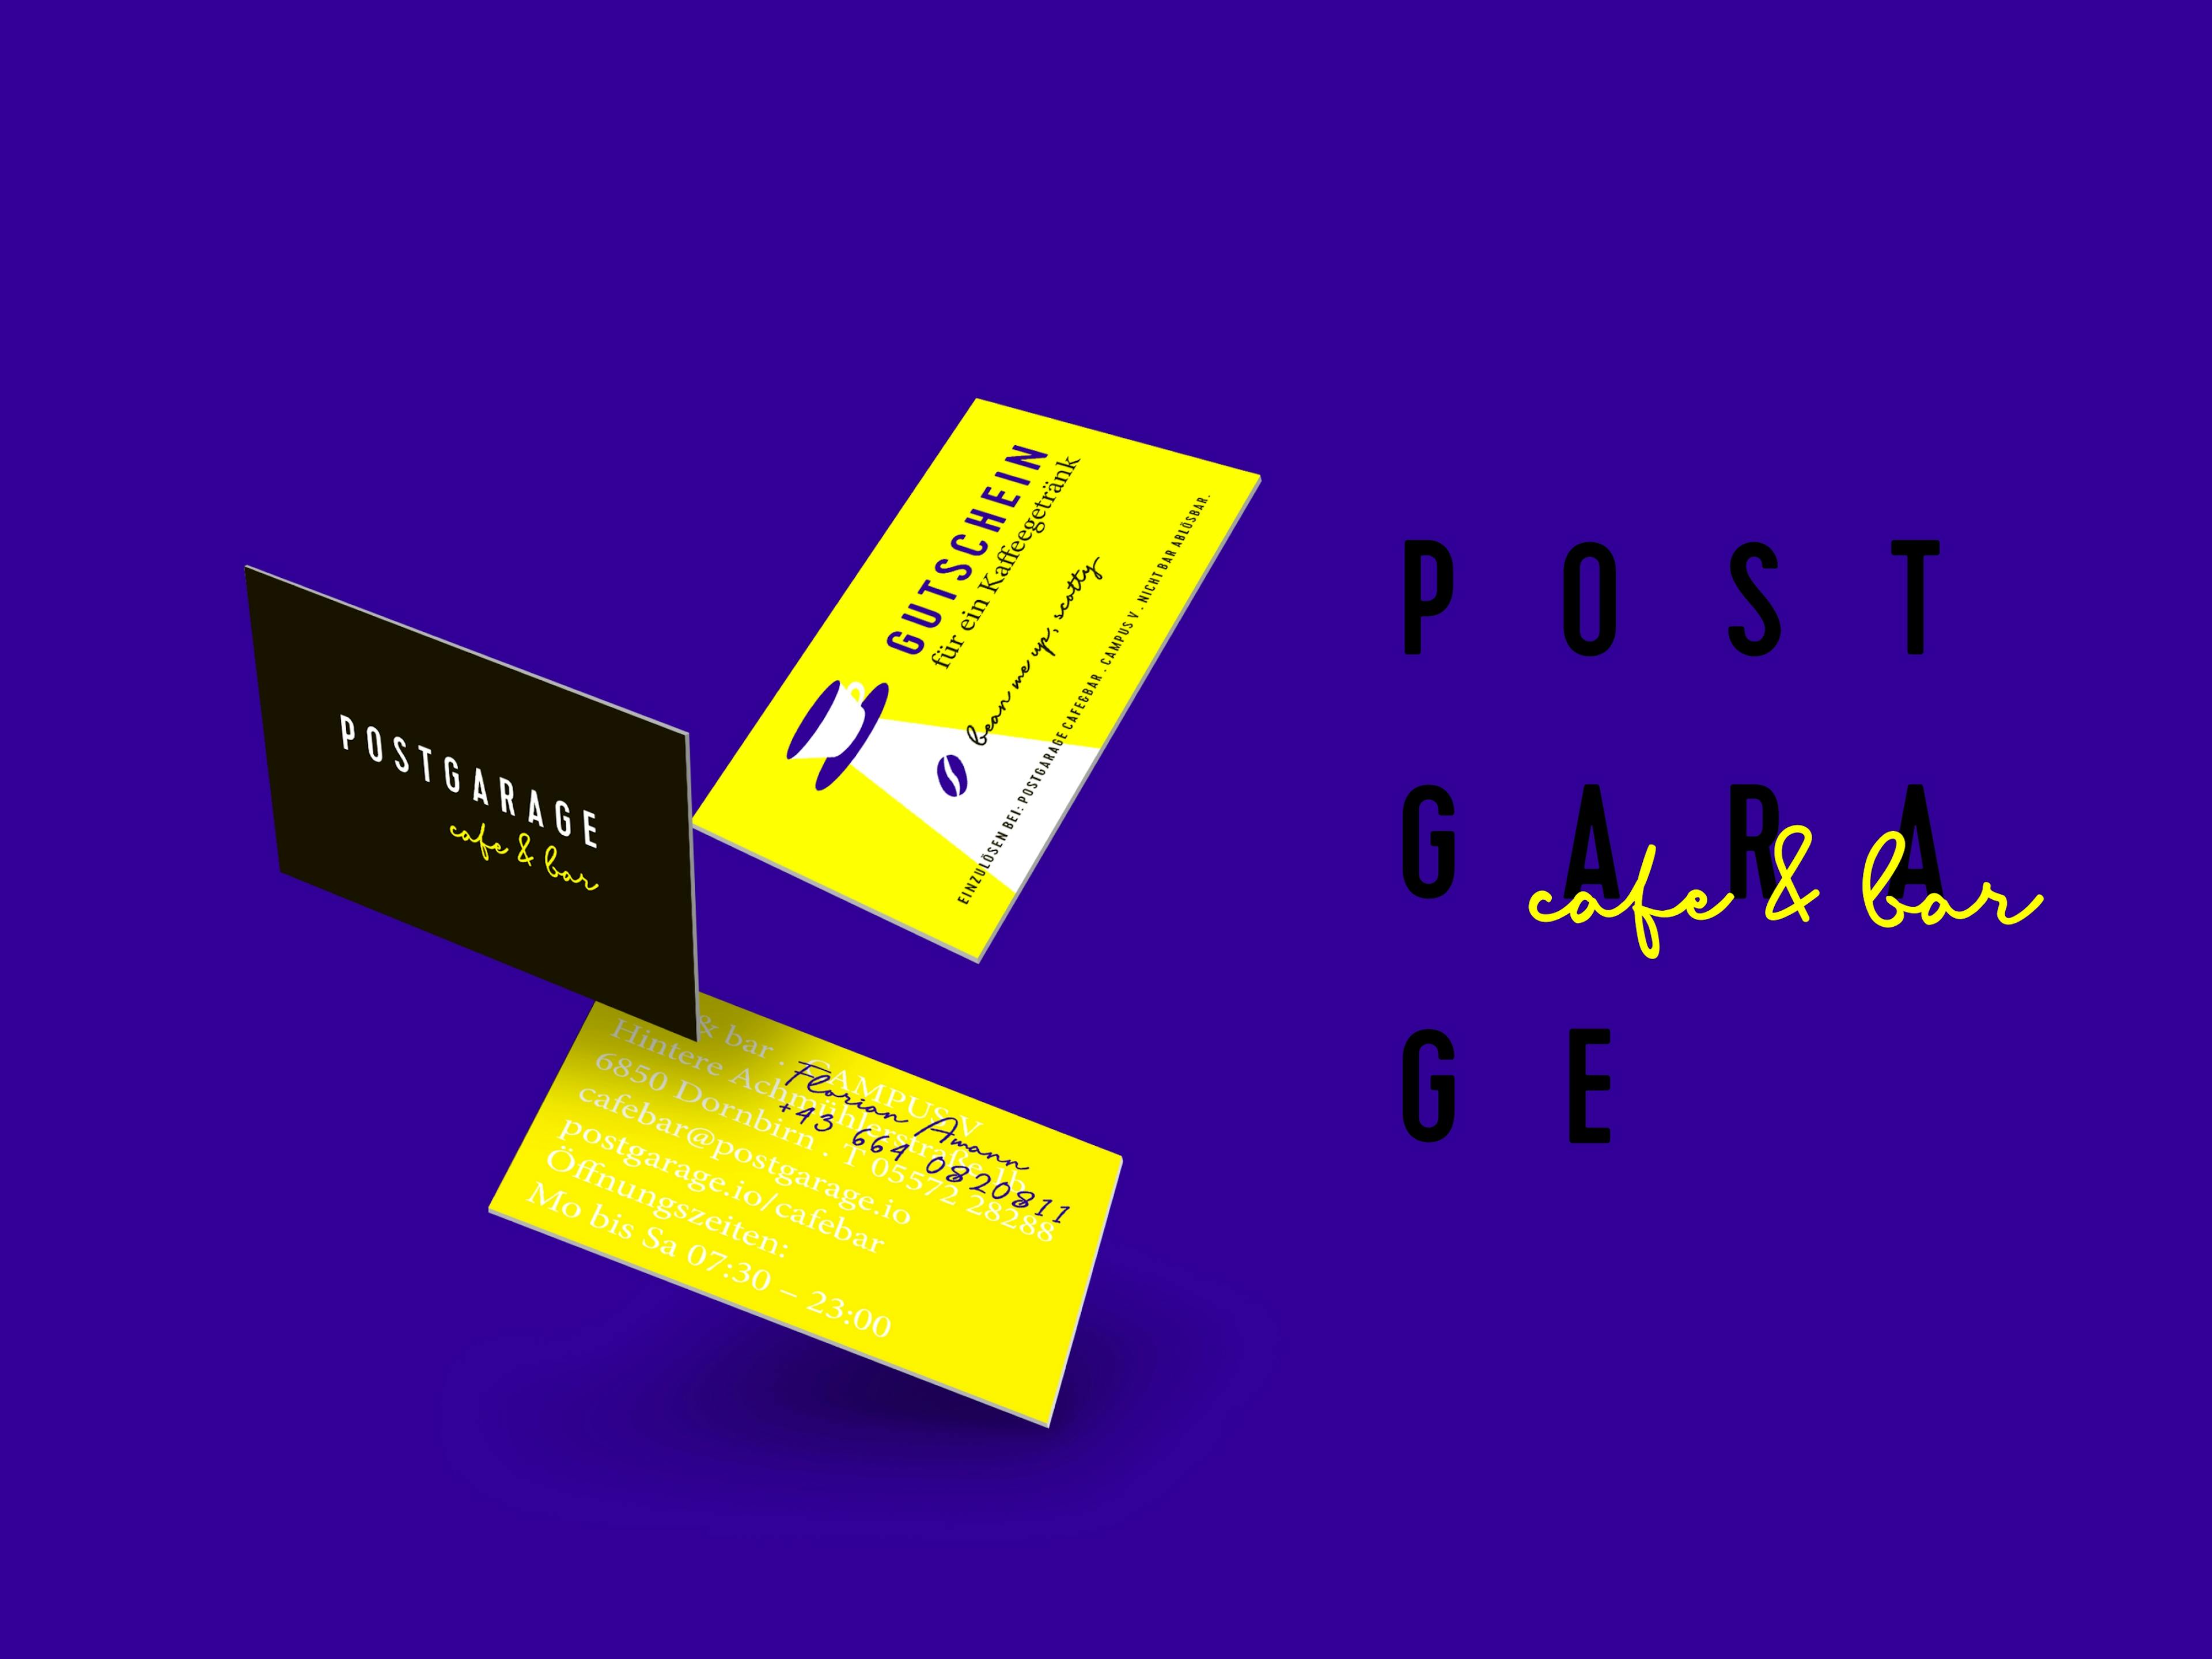 Fliegende Visitenkarte und Gutscheine der Postgarage cafe&bar © gm gobiq